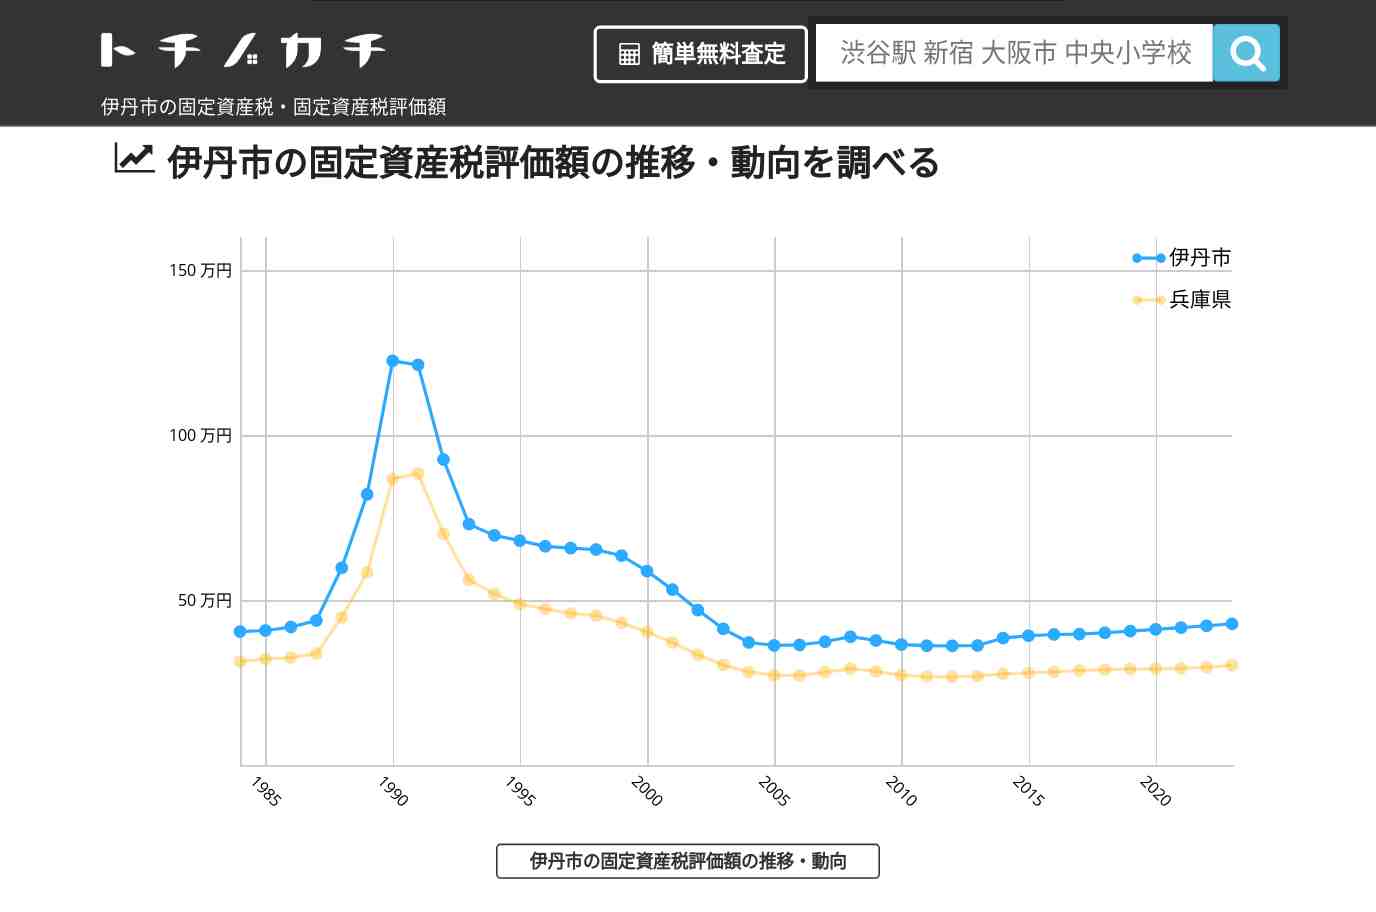 伊丹小学校(兵庫県 伊丹市)周辺の固定資産税・固定資産税評価額 | トチノカチ